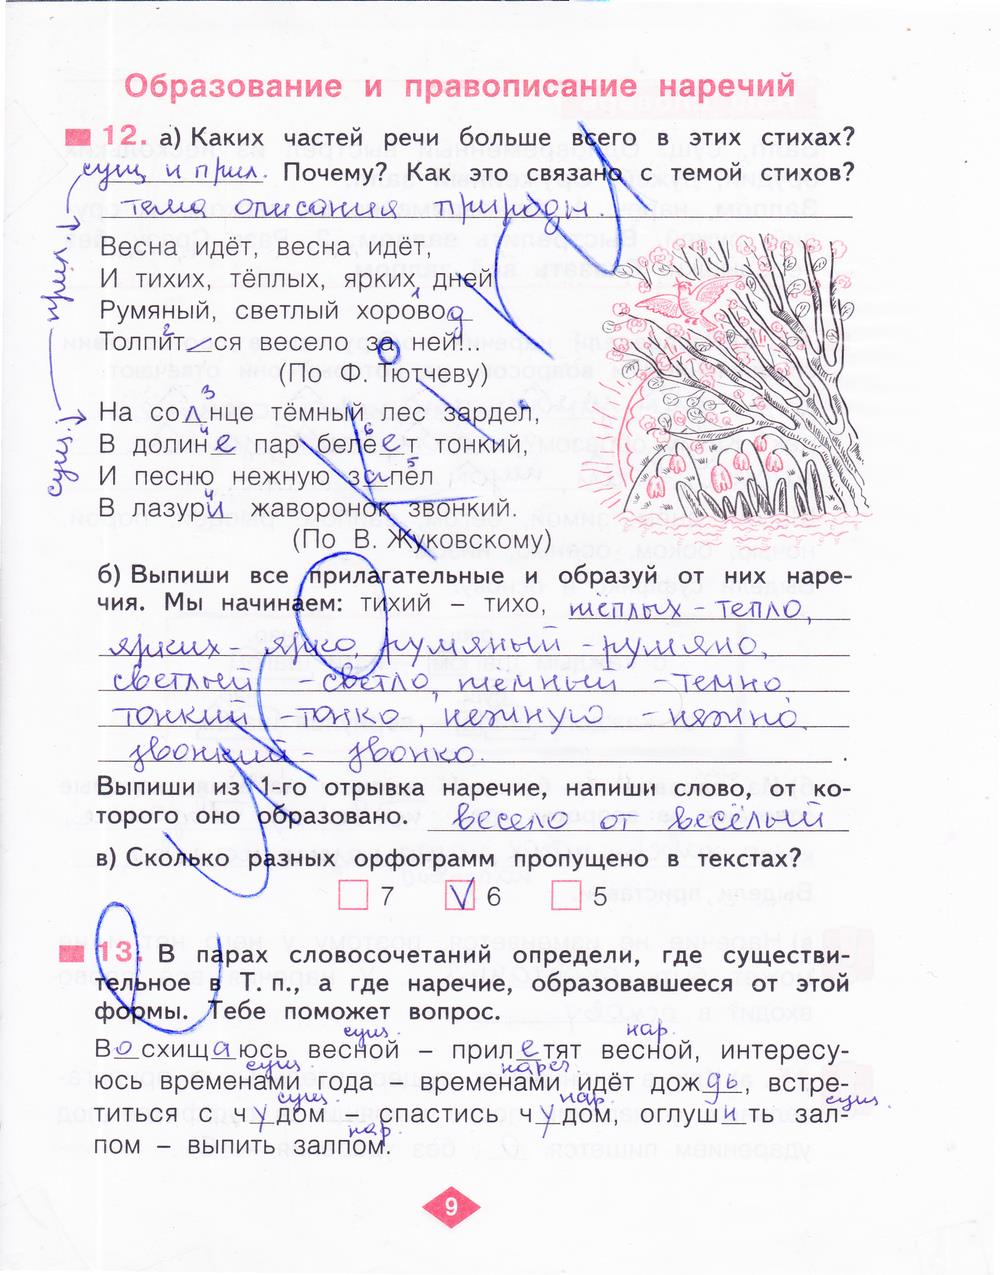 гдз 4 класс рабочая тетрадь часть 4 страница 9 русский язык Нечаева, Воскресенская